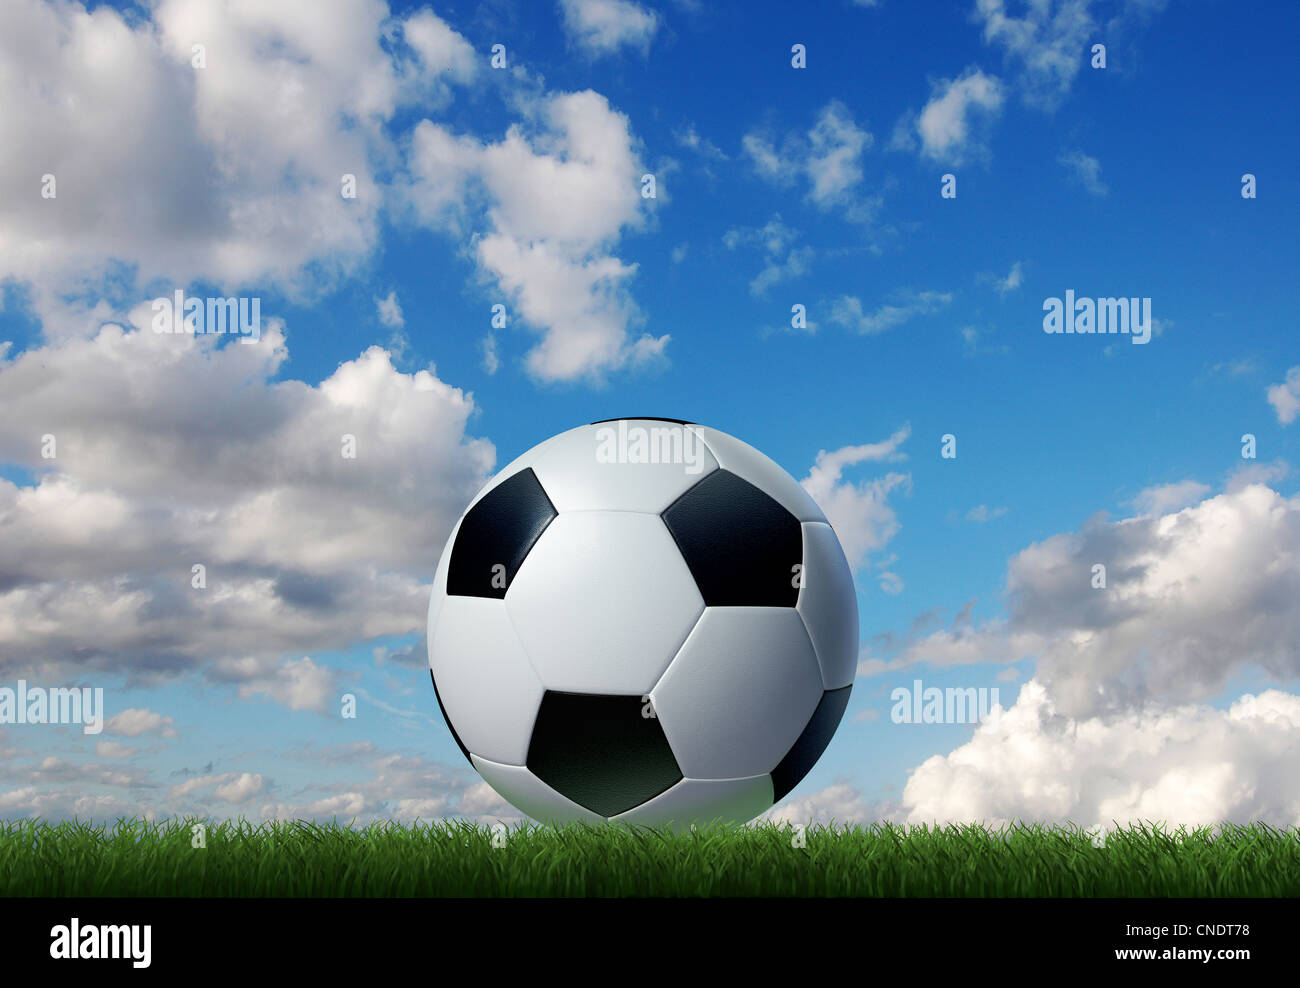 Fußball auf dem Rasen mit Himmel und Wolken im Hintergrund. Stockfoto